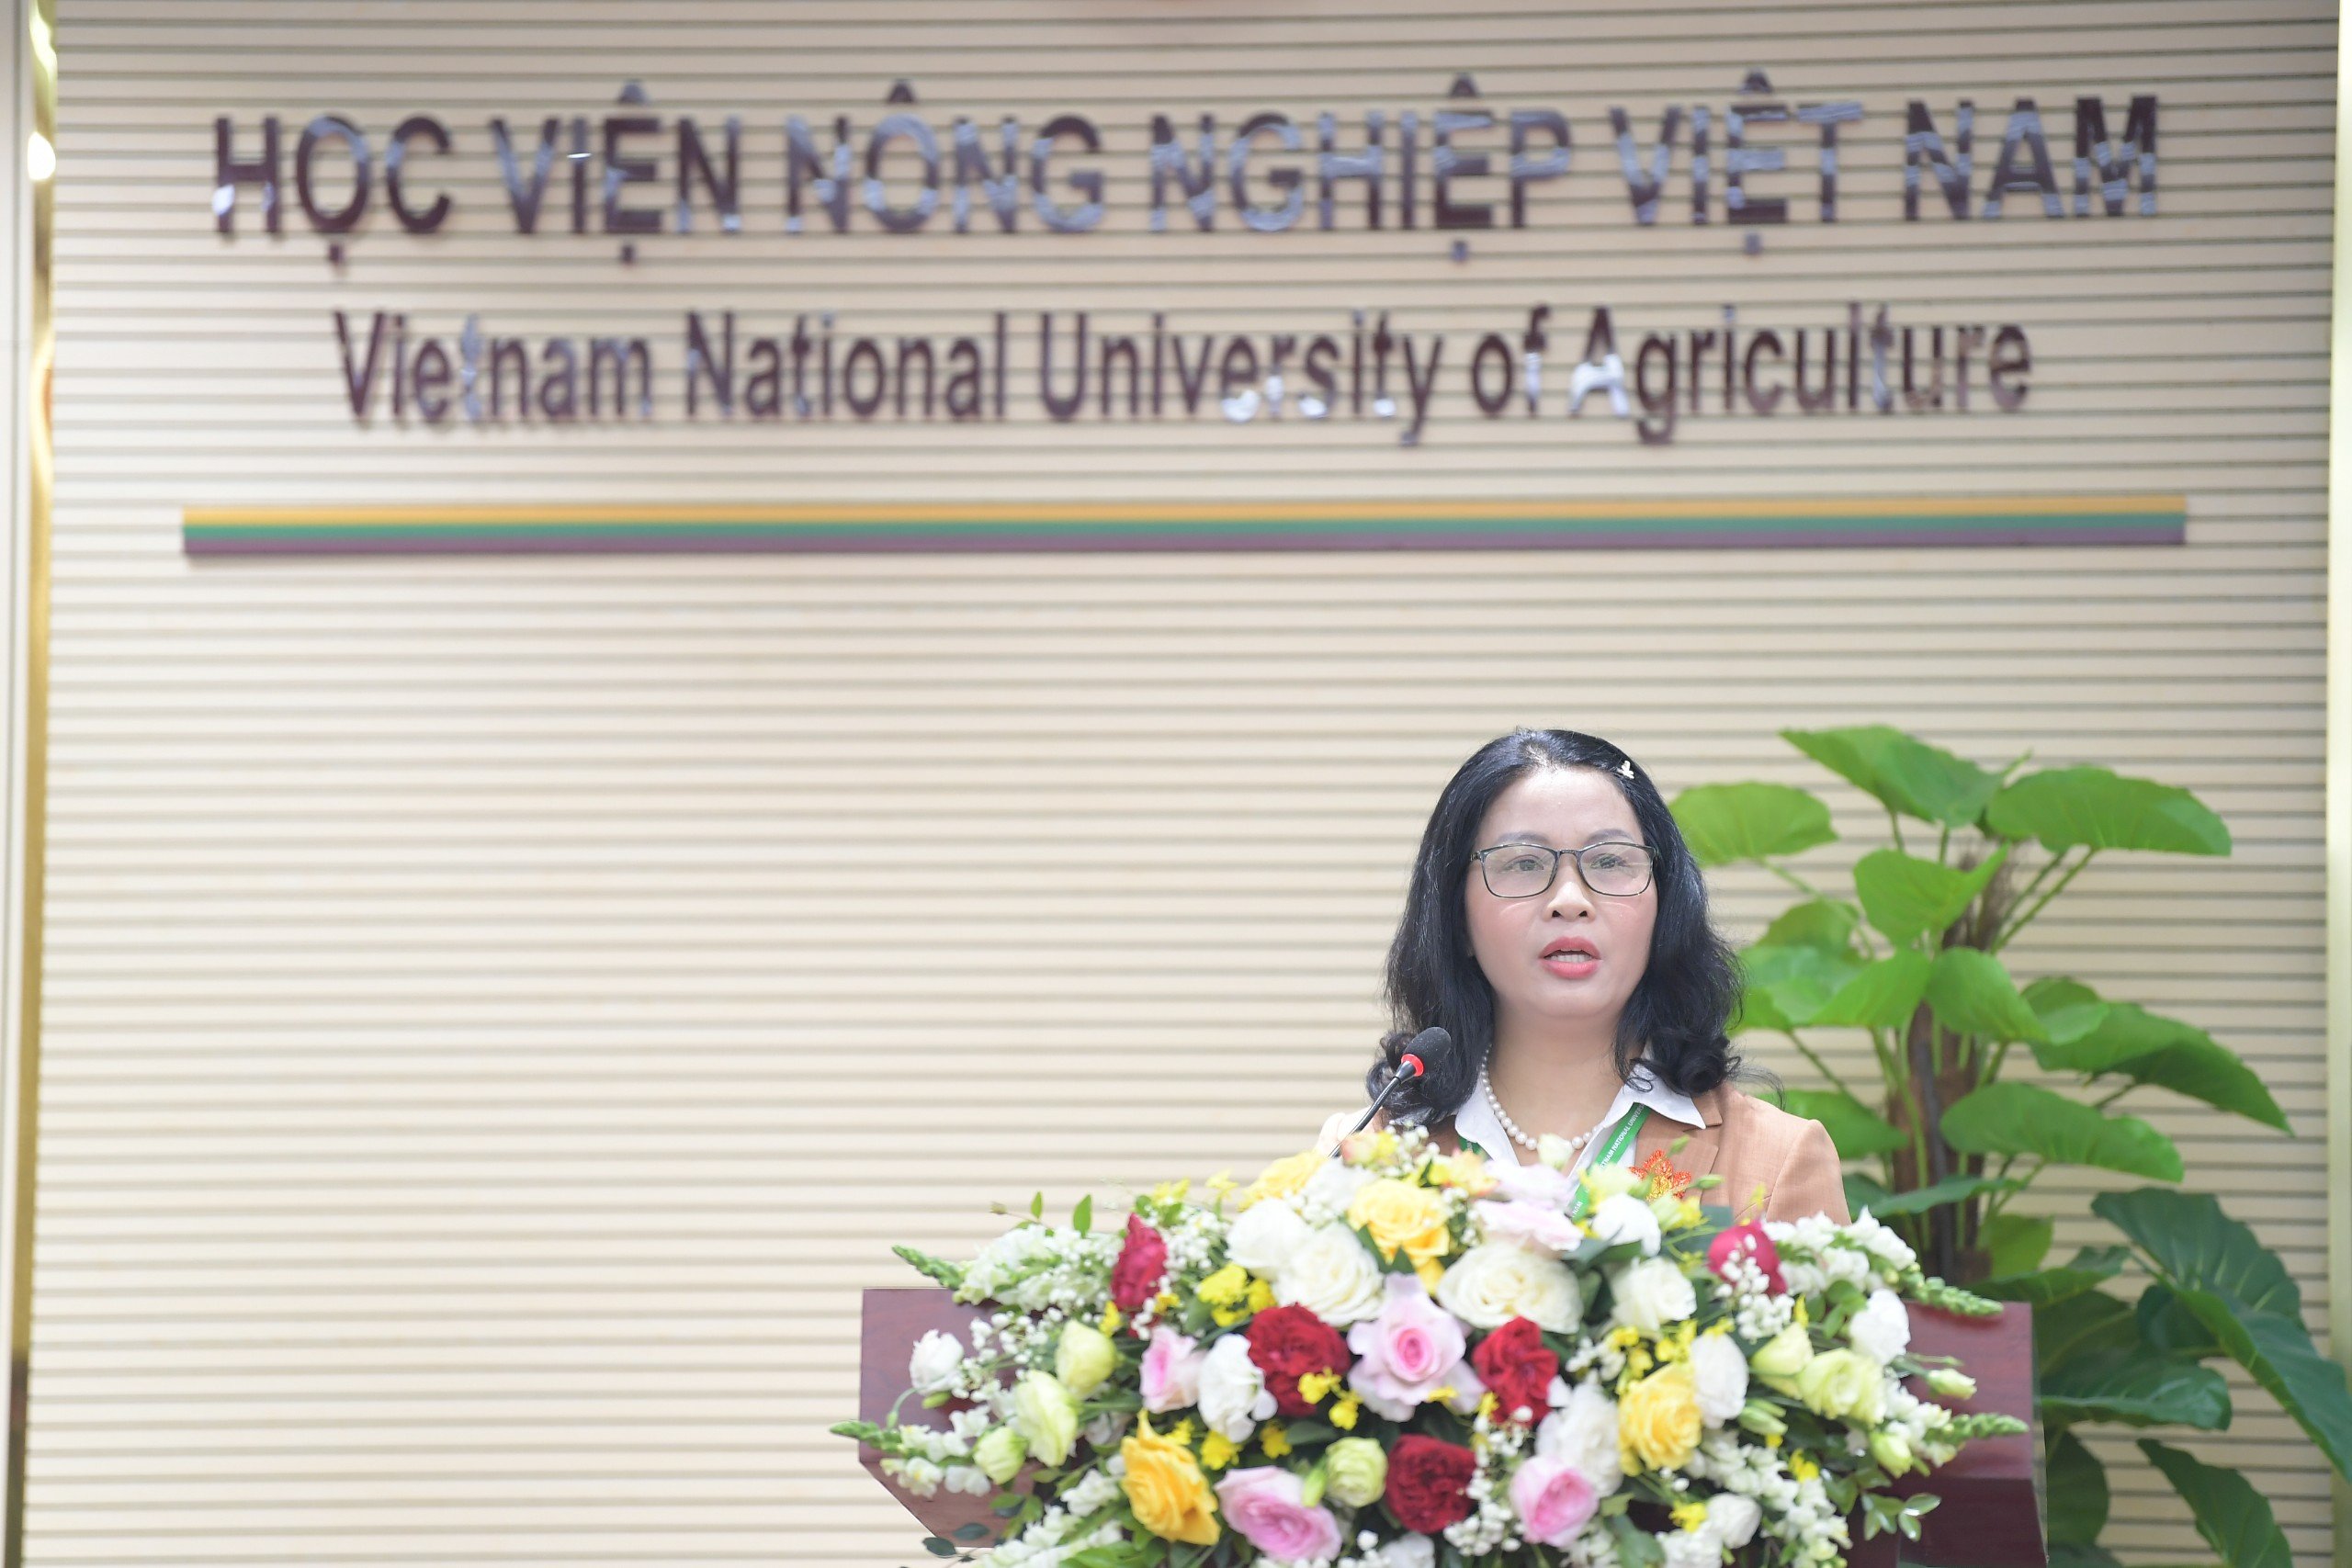 3 huyện Chương Mỹ, Quốc Oai, Thạch Thất của Hà Nội và Học viện Nông nghiệp Việt Nam bàn phương án hợp tác - Ảnh 2.